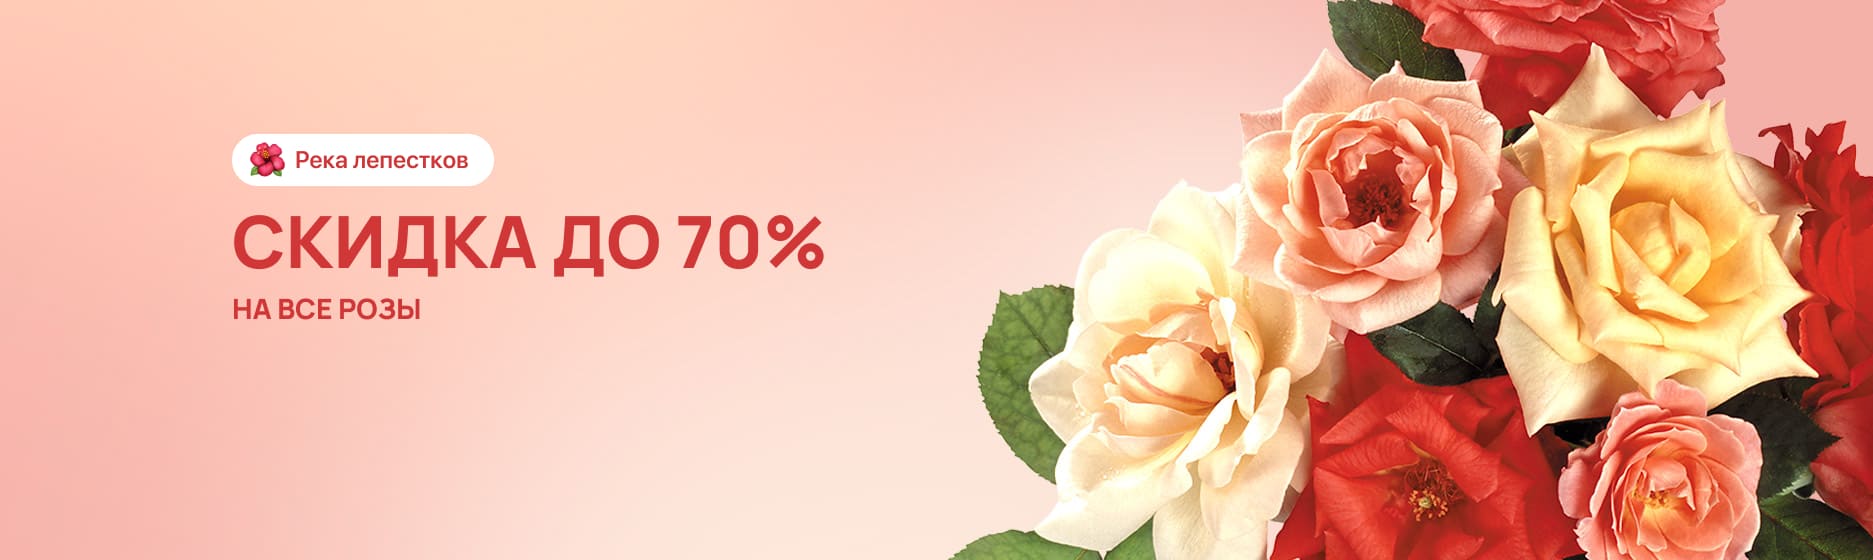 Все розы со скидкой до 70%